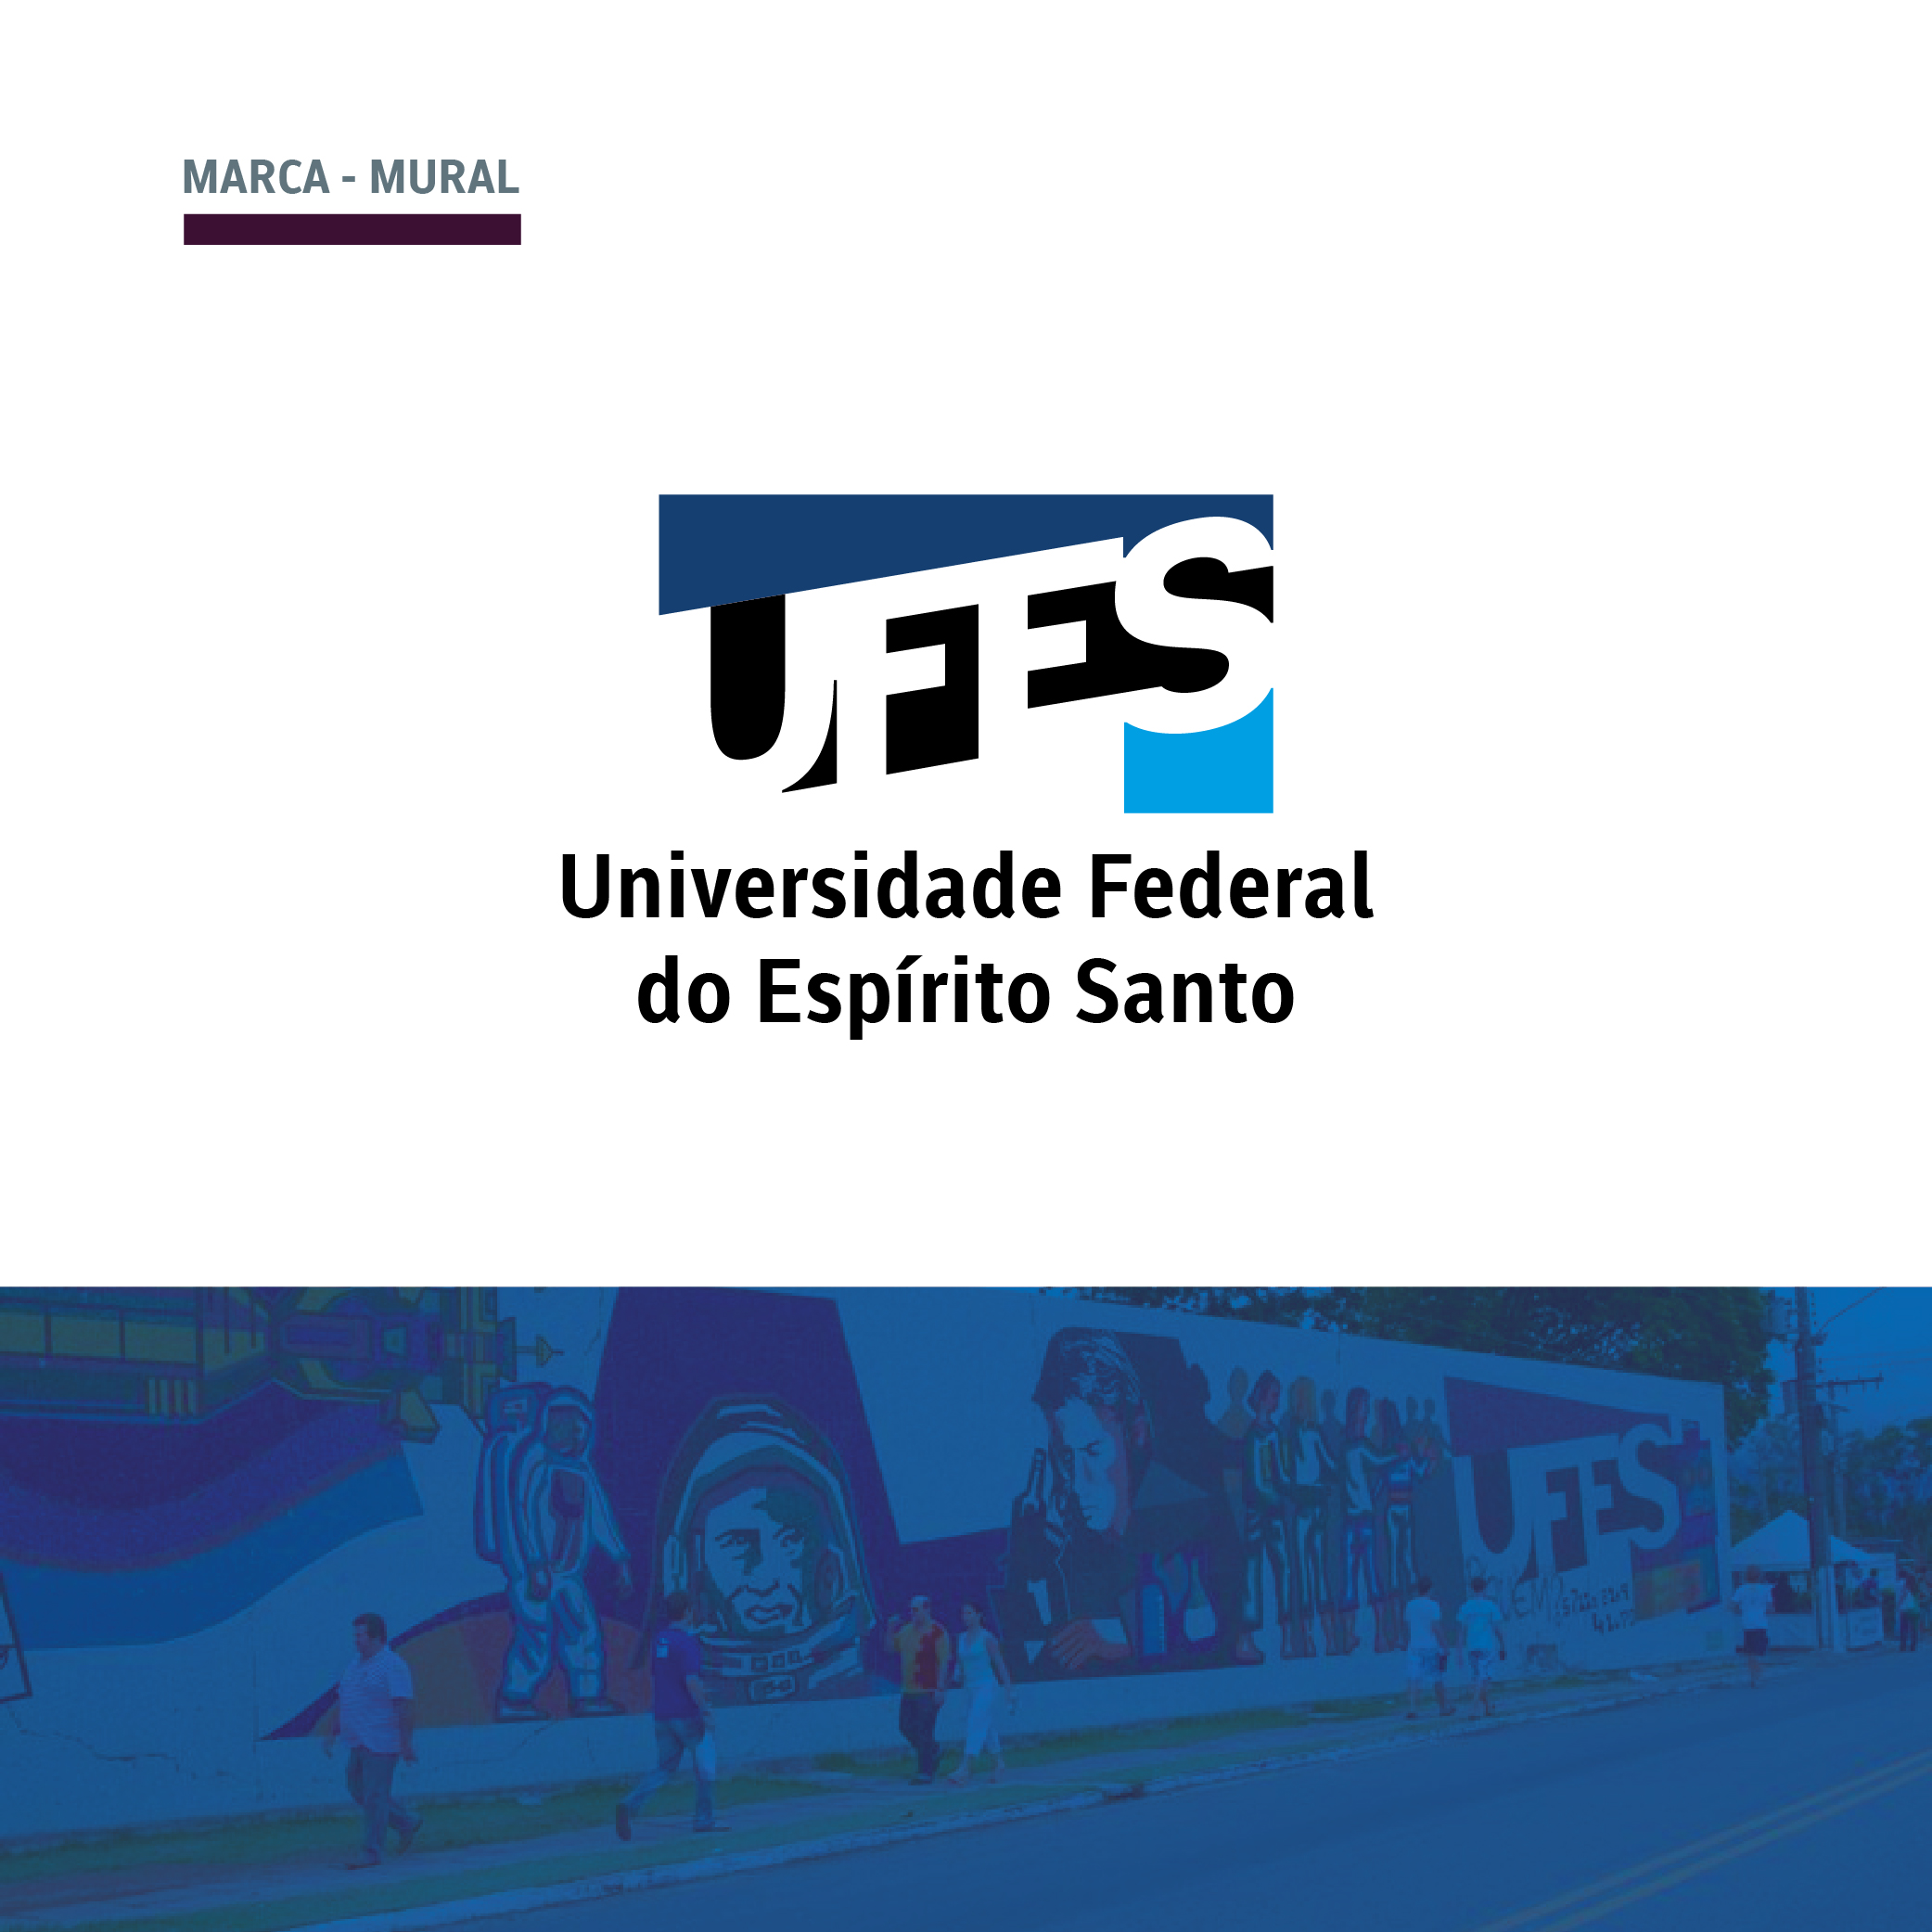 [Identidade visual Ufes] Marca da UFES, mural campus de Goiabeiras.  Elementos que constituem a marca